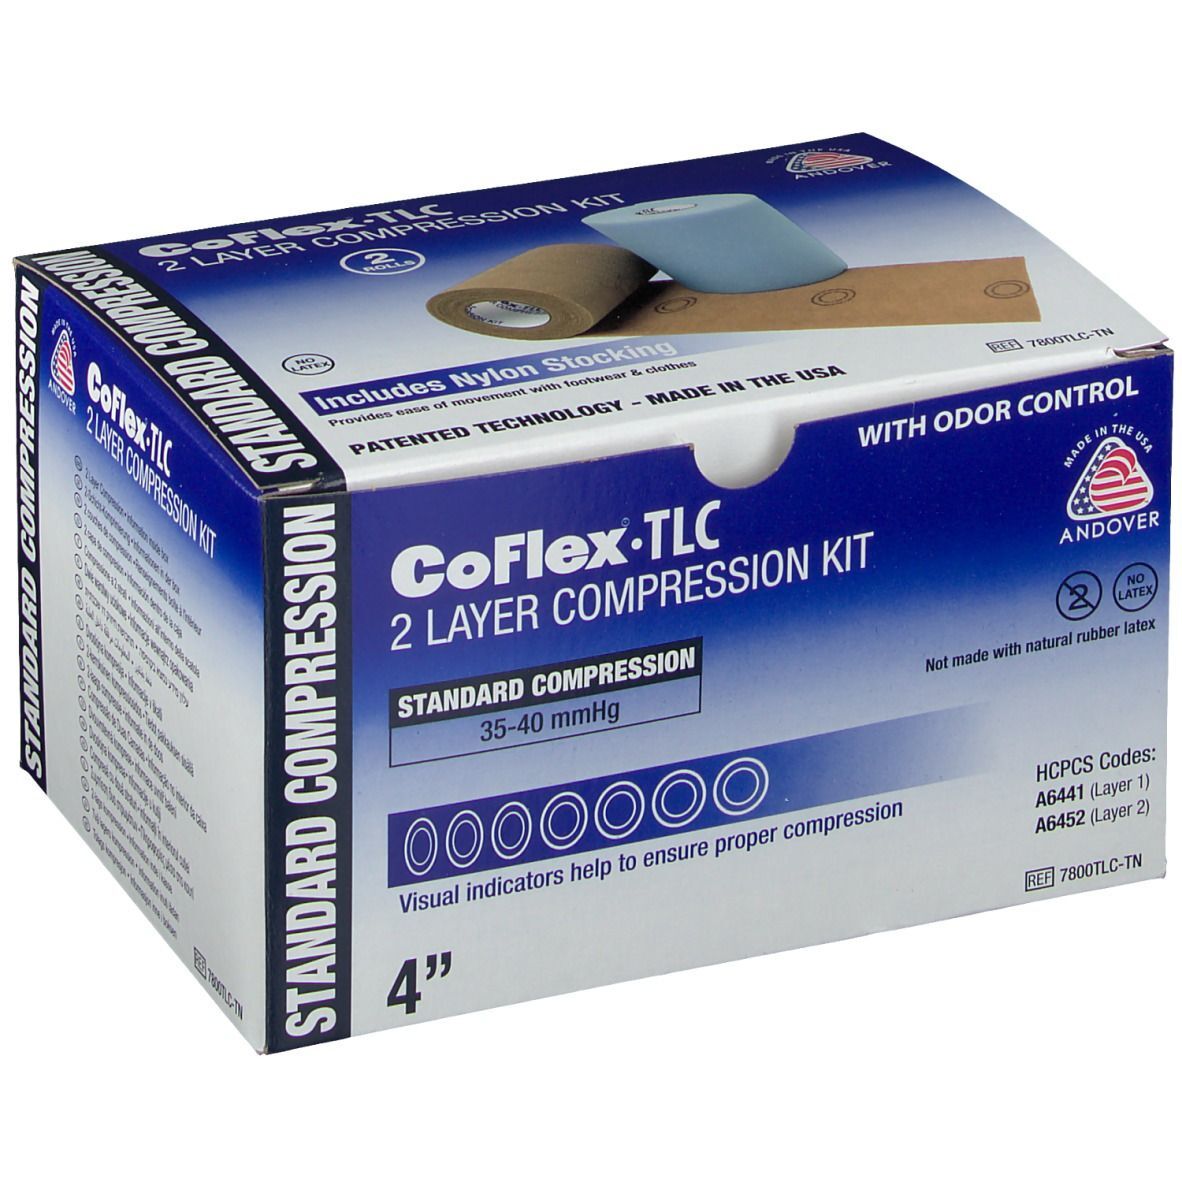 HOSPITHERA CoFlex® TLC 2-Schicht Kompressionsverband 35-40 mmHg